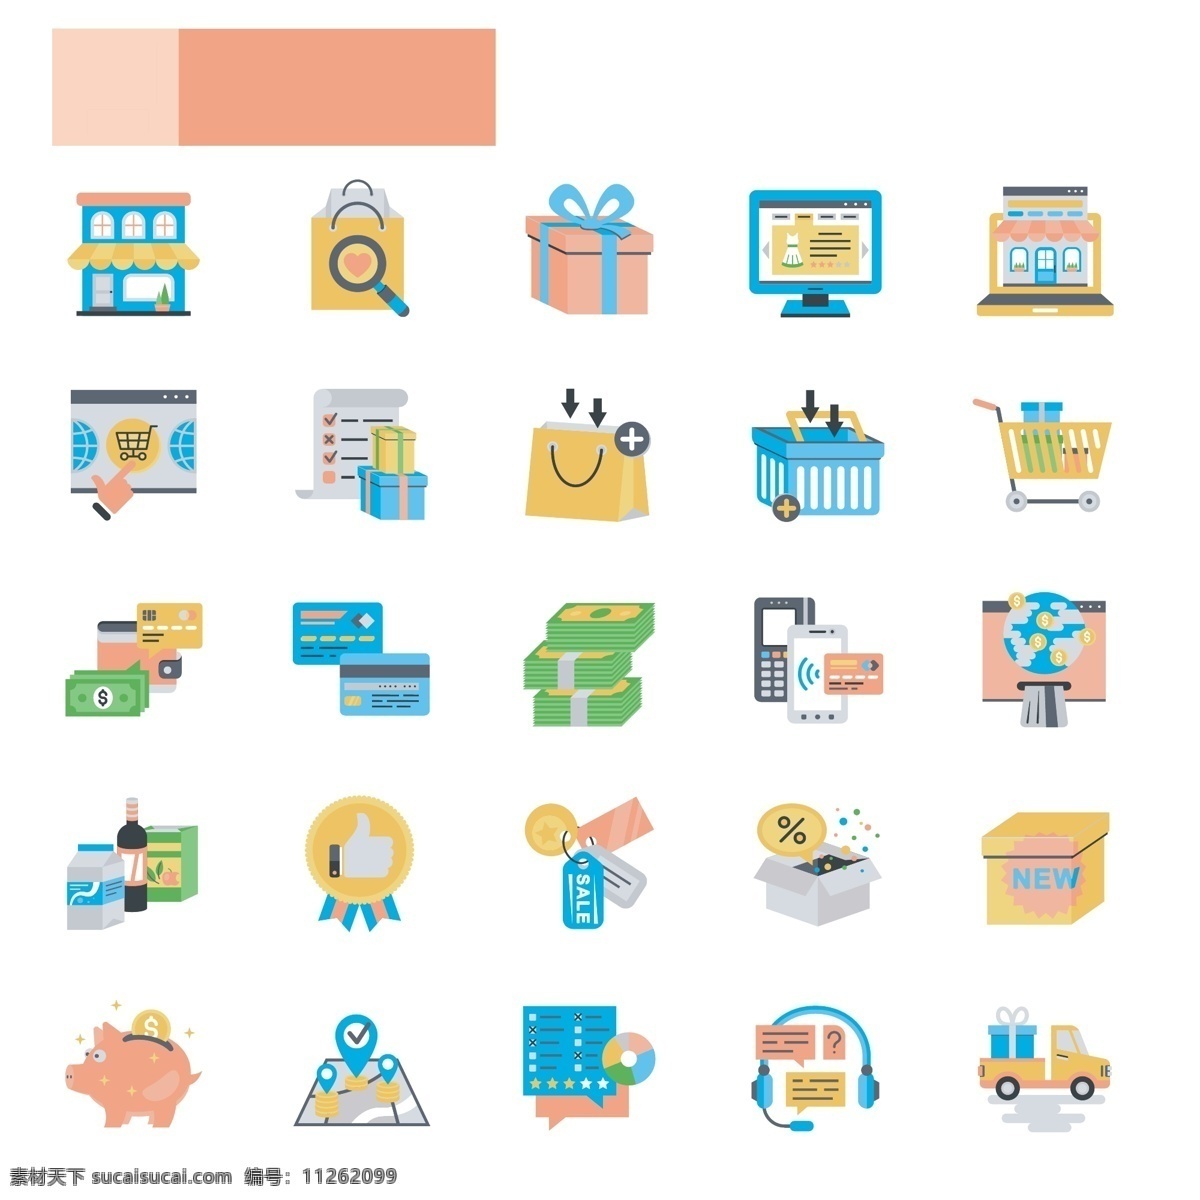 款 彩色 卡通 购物 图标 icon 图片列表 互联网 社交 网页界面 简约 创意 插画 媒体 品牌 标识 生活 icon下载 购物图标